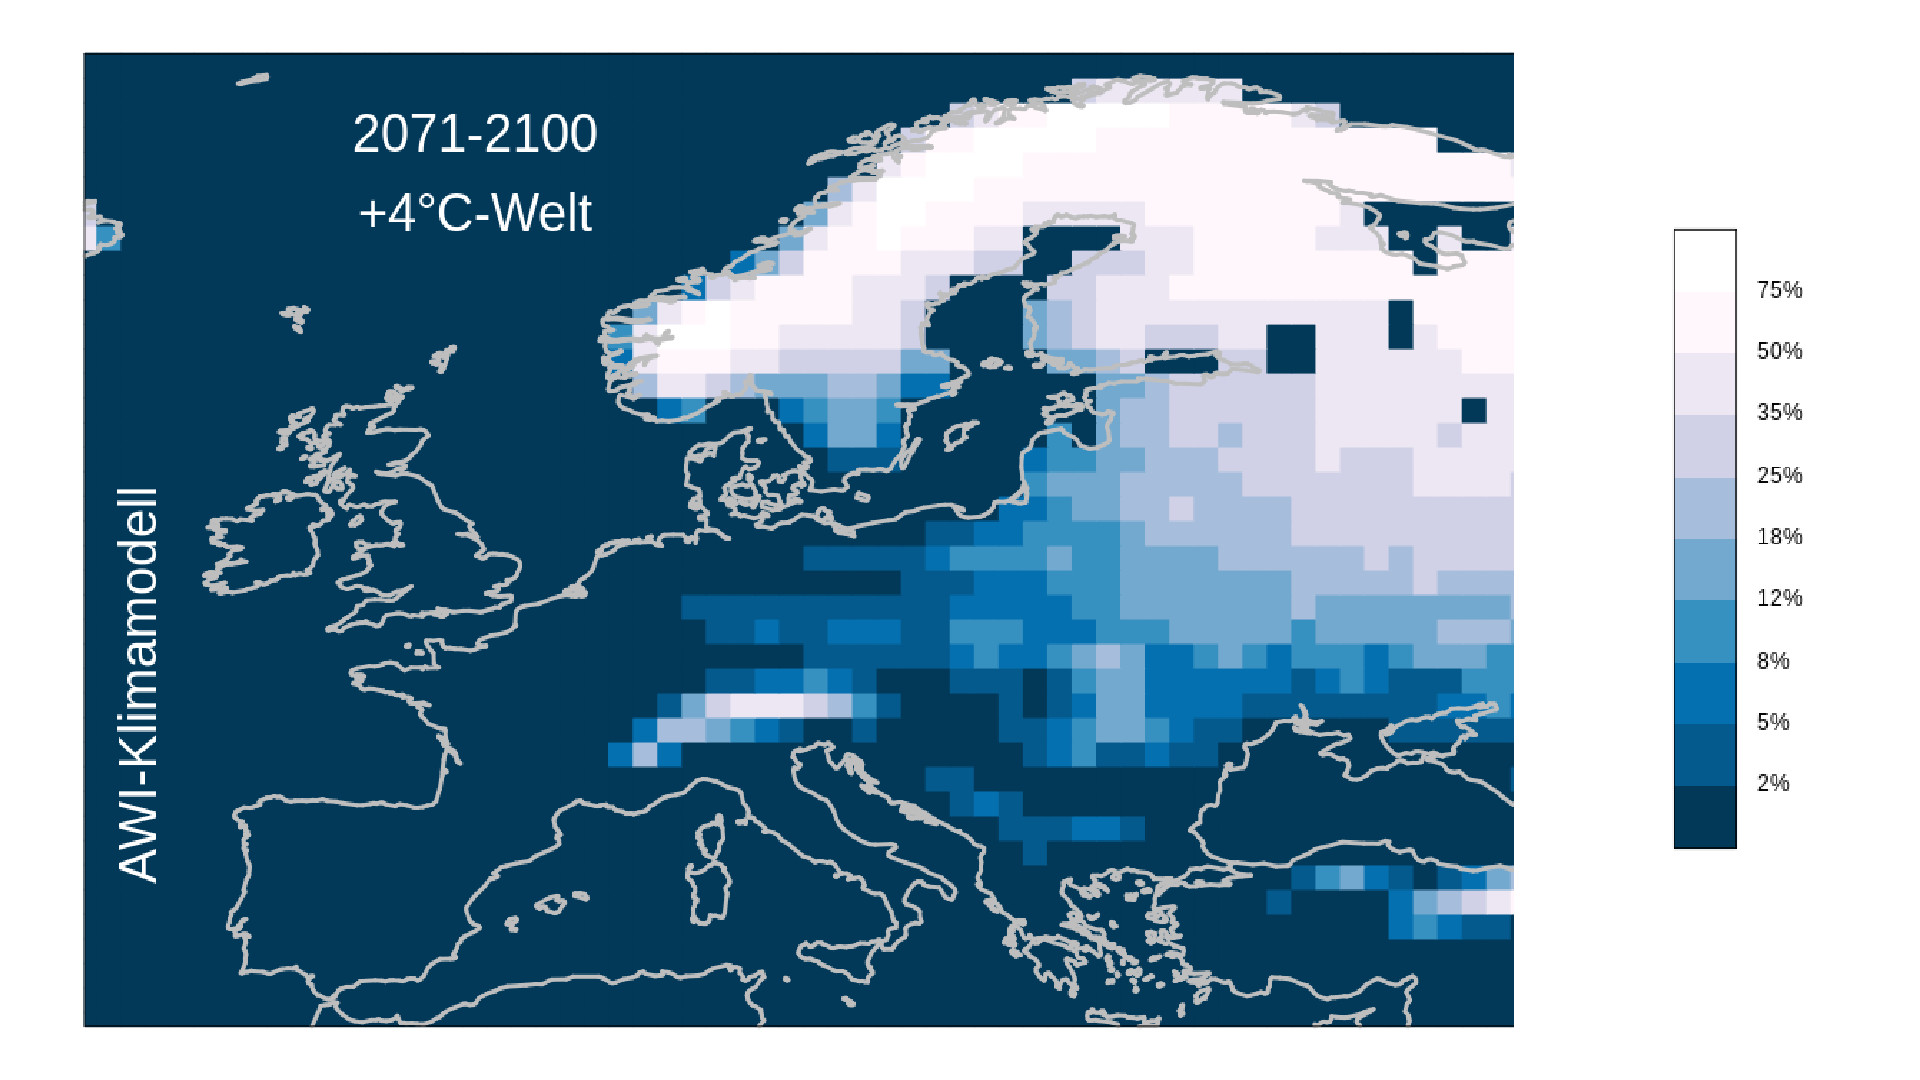 Karte von Europa, die auf einer Farbskala von Weiß bis Blau zeigt, welche Wahrscheinlichkeiten im Modell für Schnee bei der globalen Erwärmung von 4 Grad bestehen